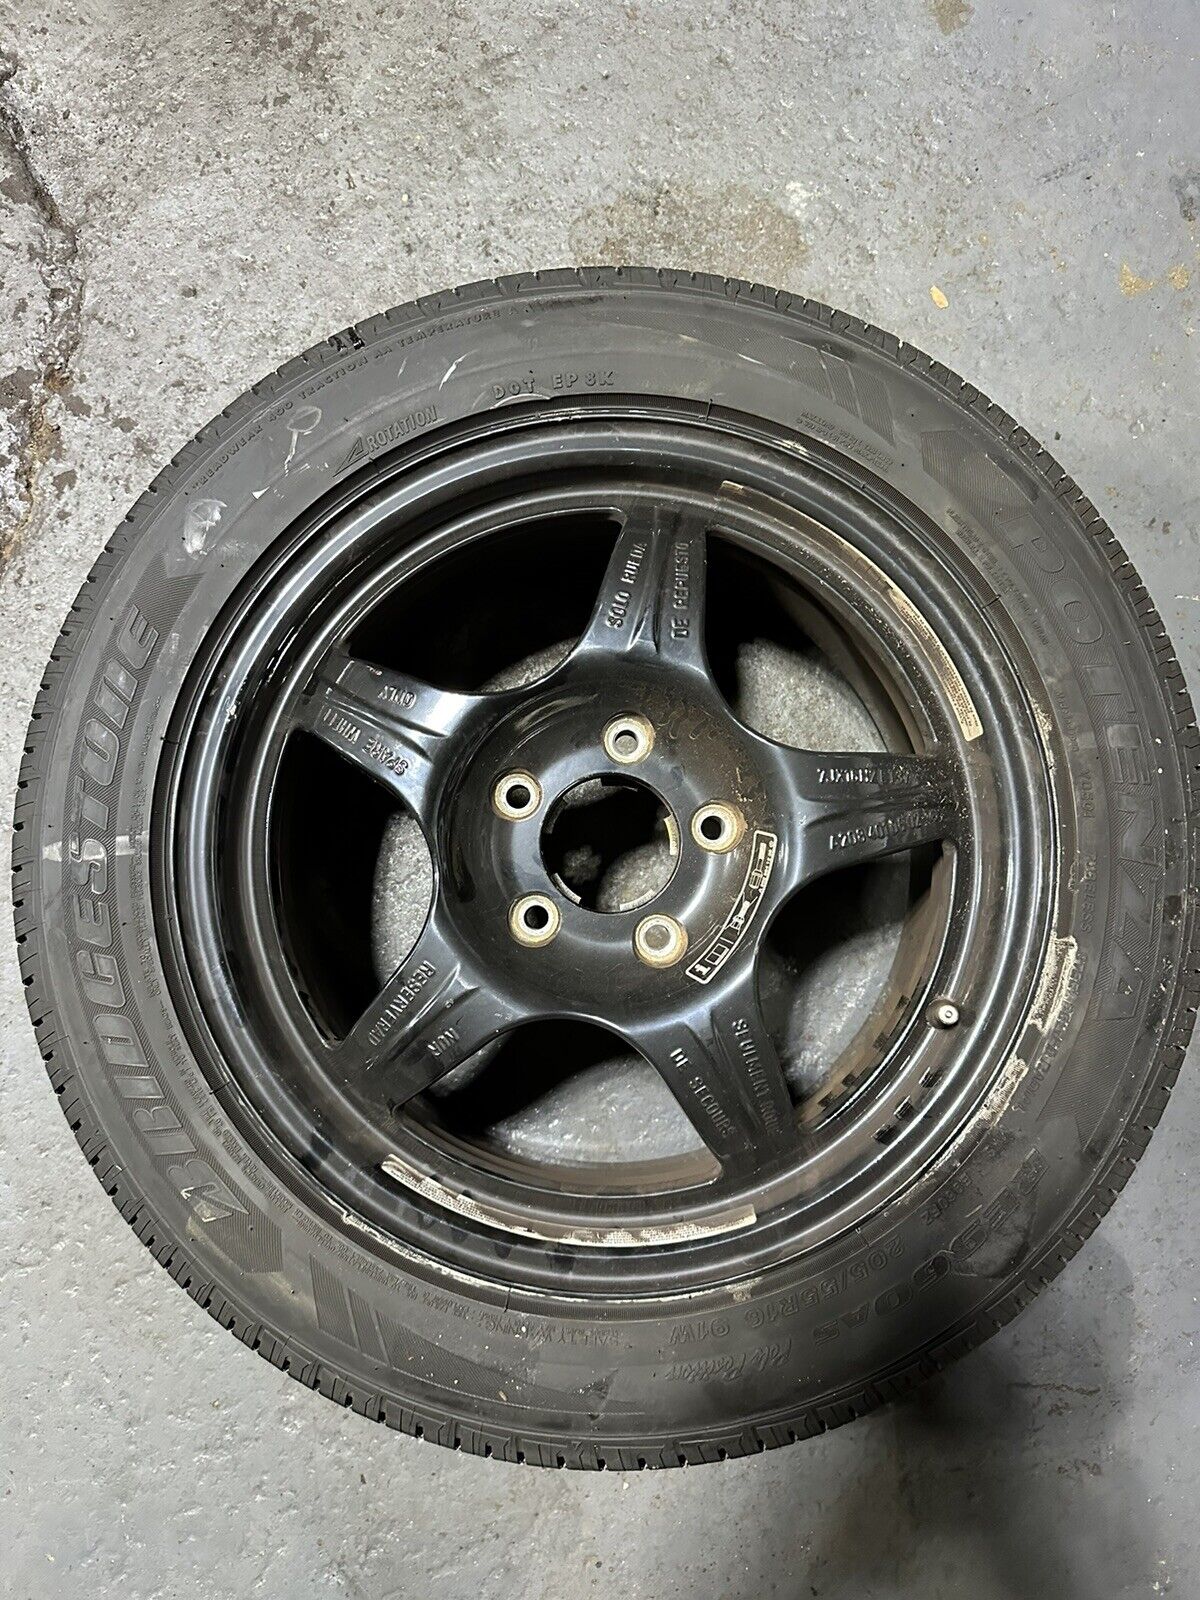 Mercedes W208 CLK320 Emergency Spare Tire Wheel Donut Rim 205 55 R16 16